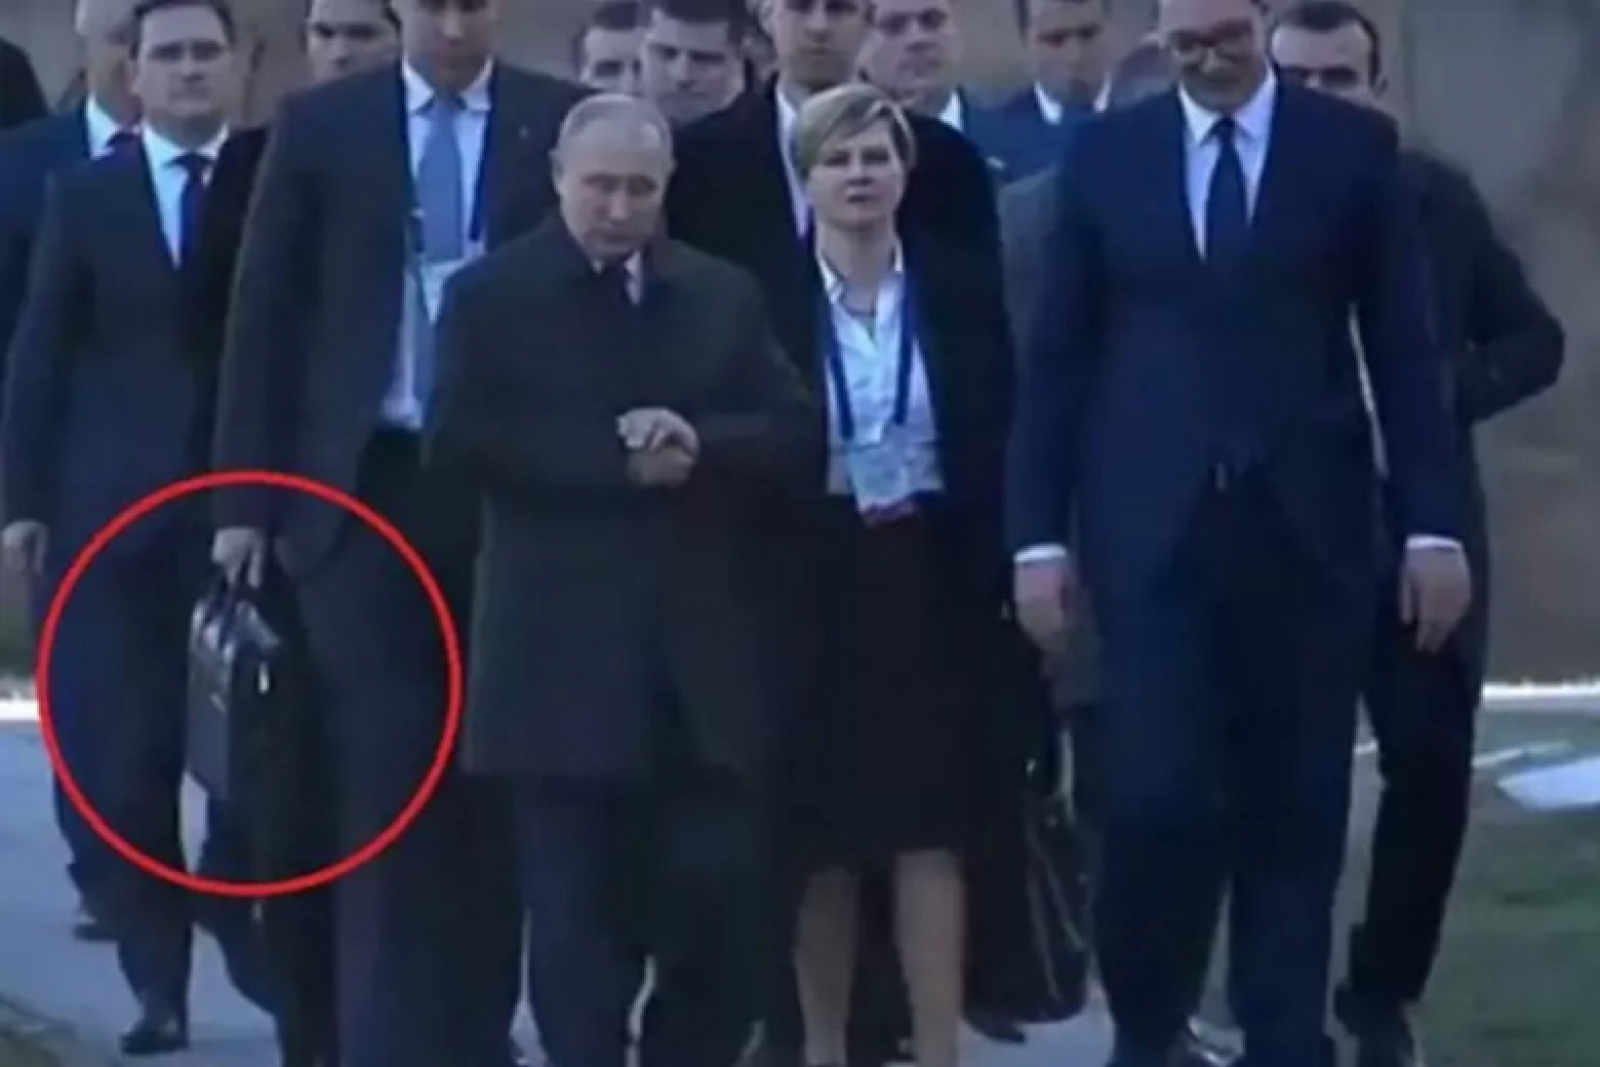 Путин награждает офицеров фото